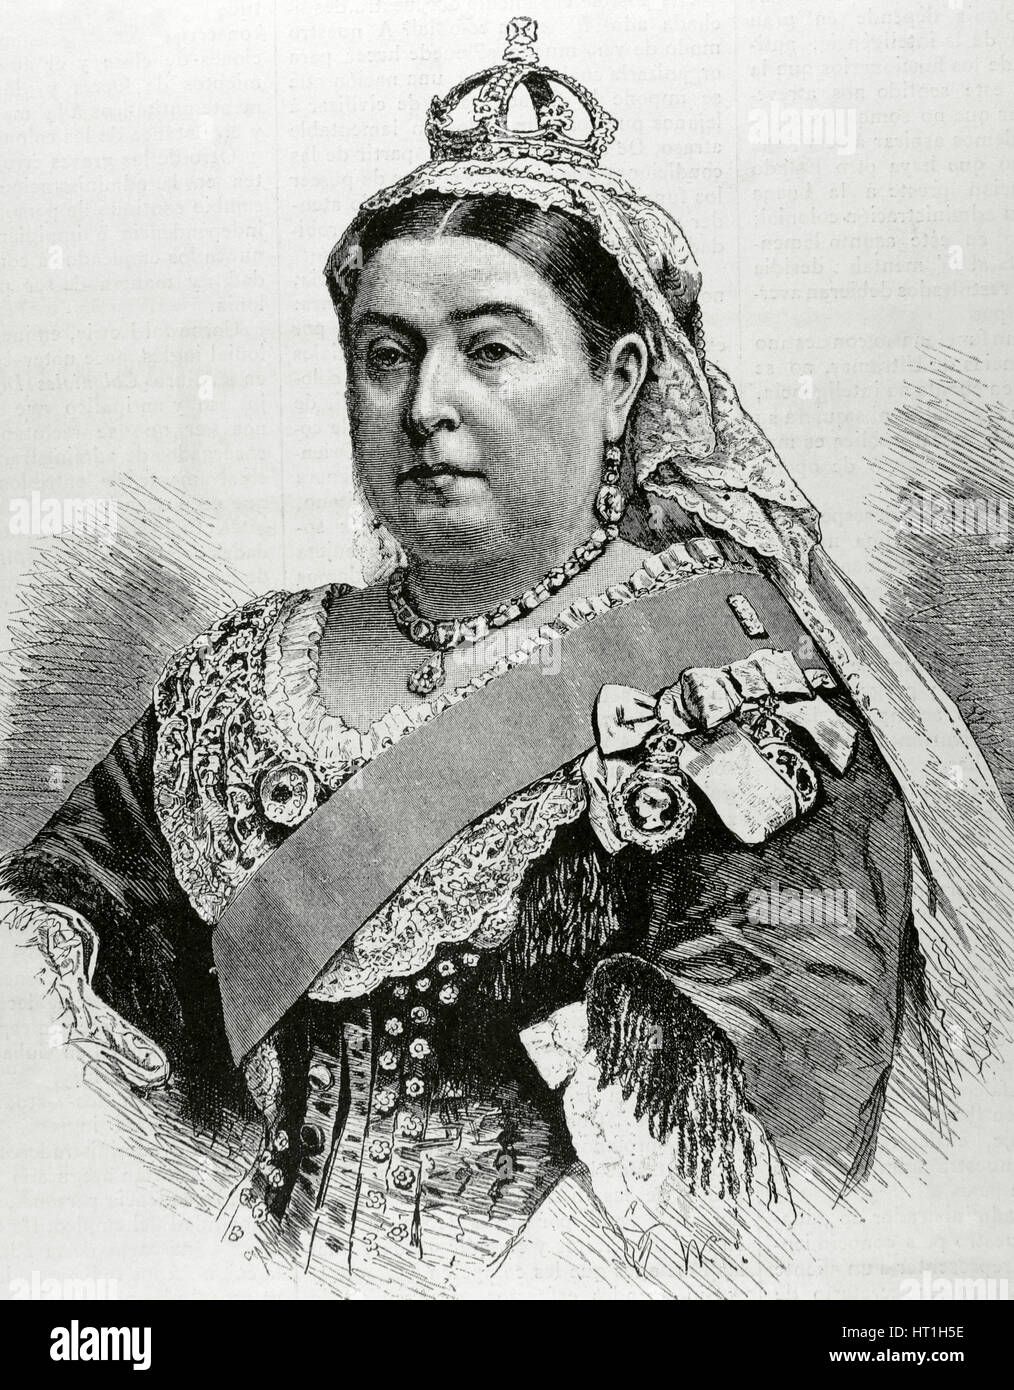 Victoria I (1819-1901). La Reina del Reino Unido de Gran Bretaña e Irlanda (1837-1901) y emperatriz de la India (1876-1901). Retrato. Grabado. "La ilustracion', de 1887. Foto de stock